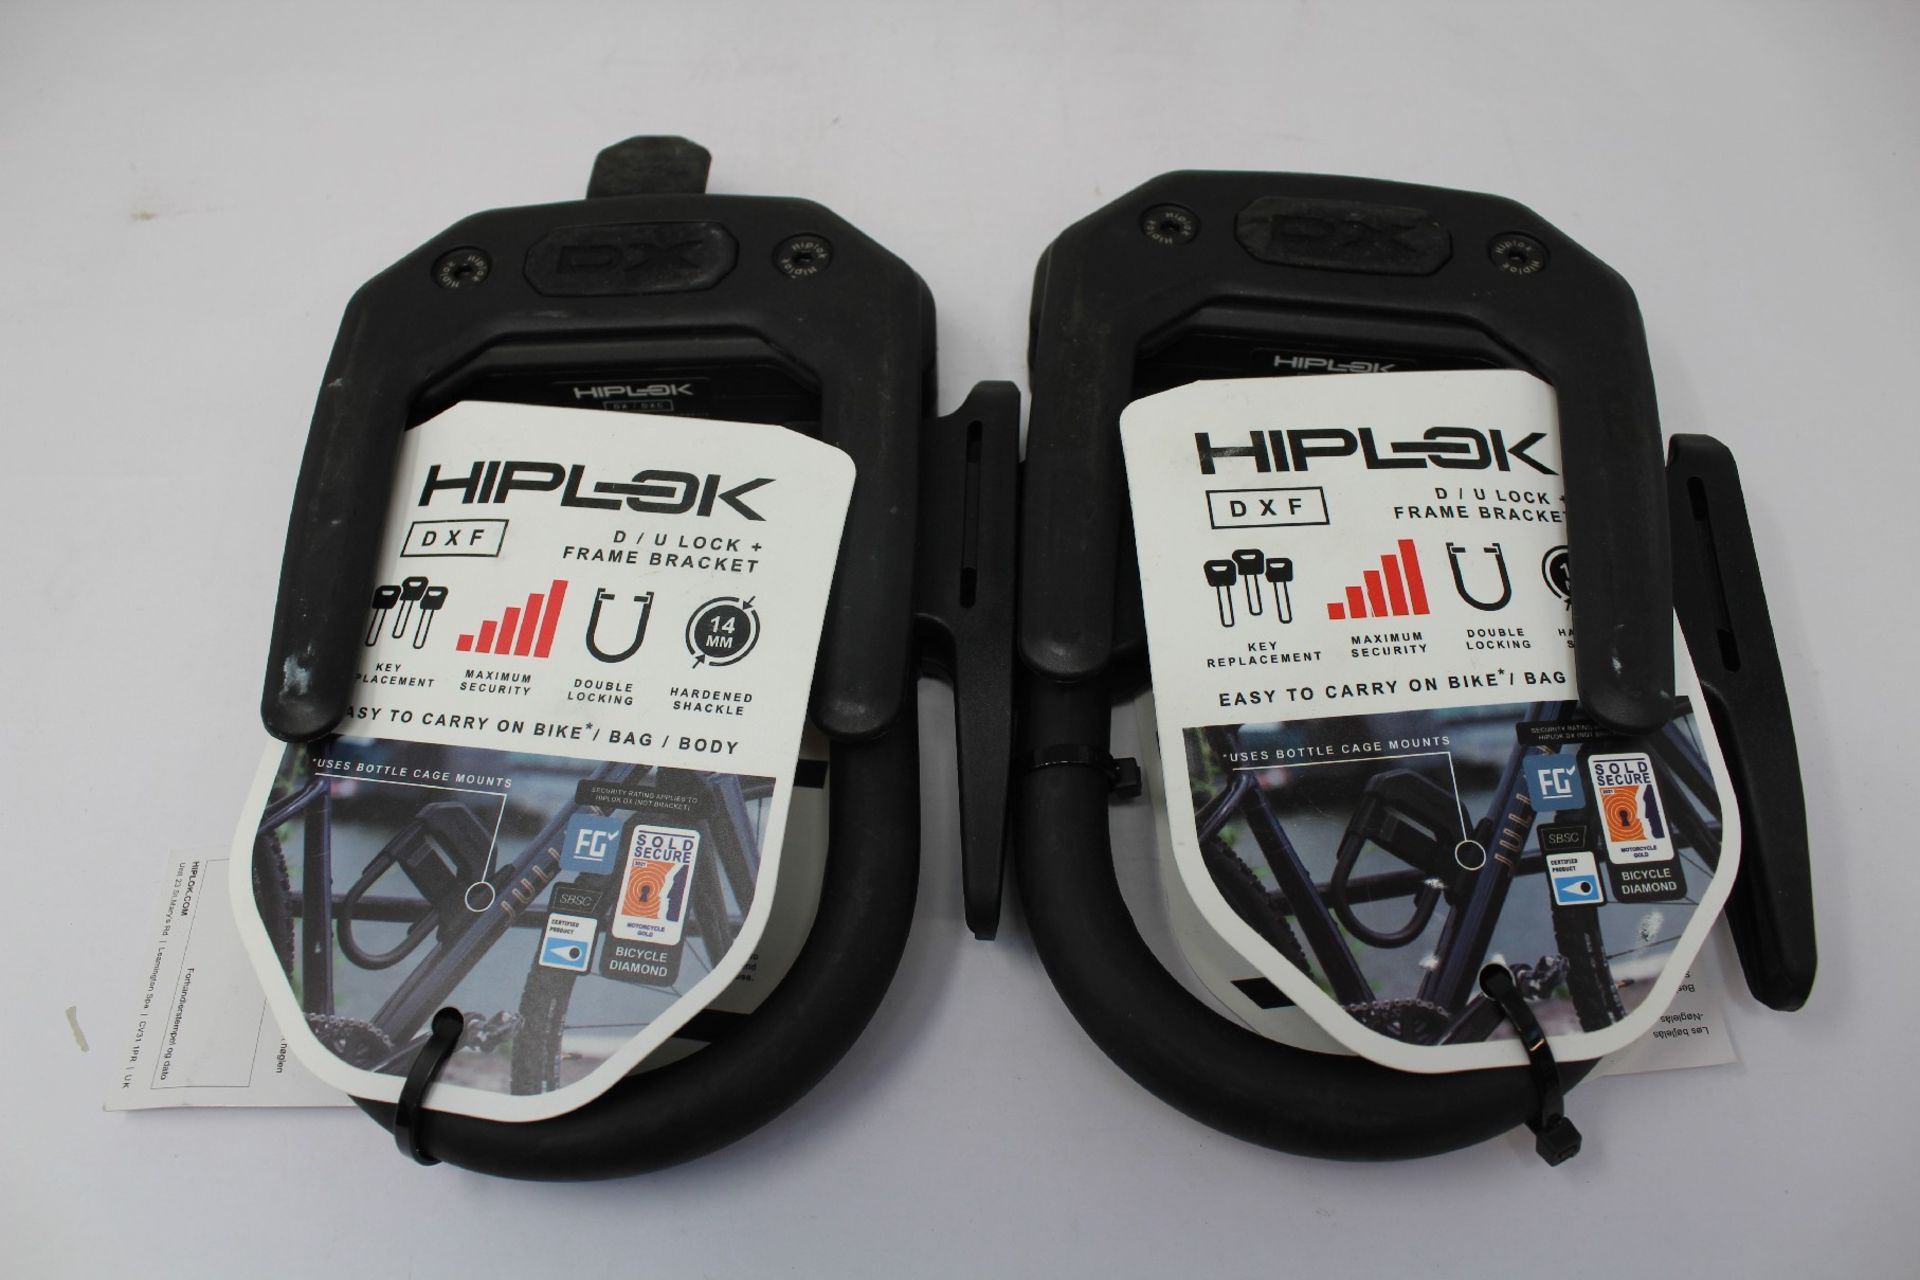 Two as new Hiplok DXF D/U Lock + Frame Brackets.